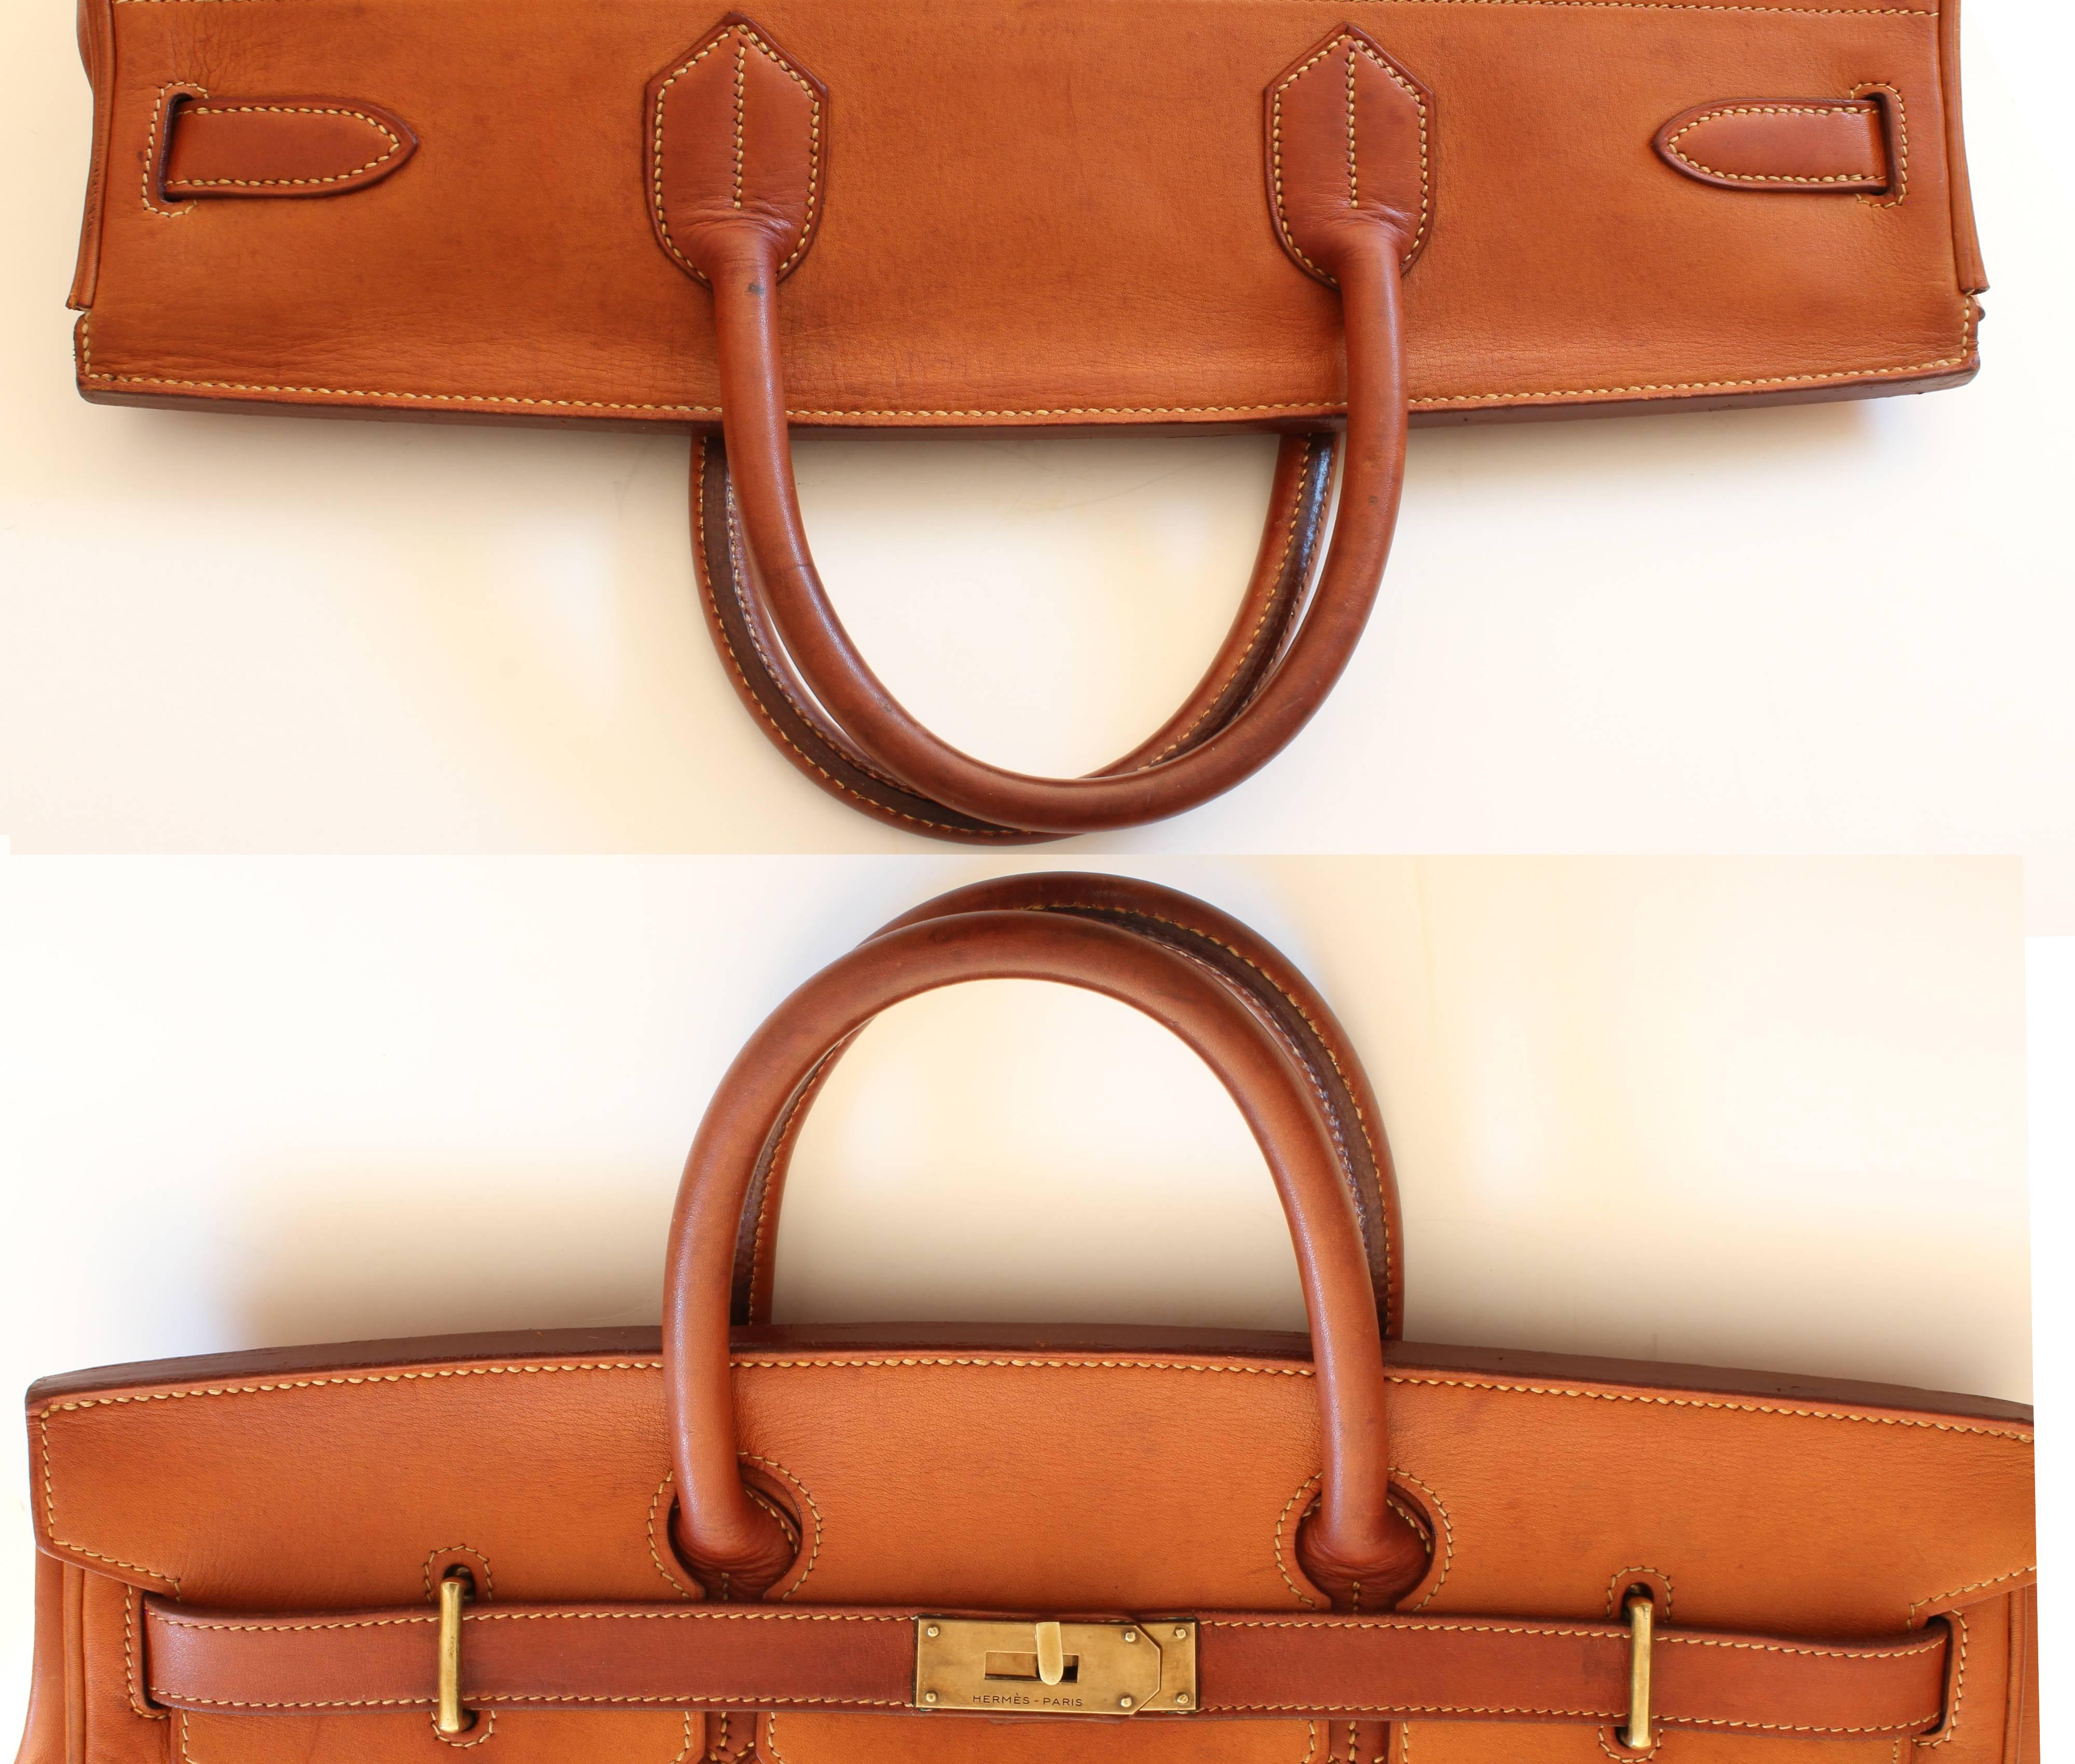 Hermes Haut a Courroies Bag HAC 45cm Travel Tote Rare Veau Grain Long Leather  3